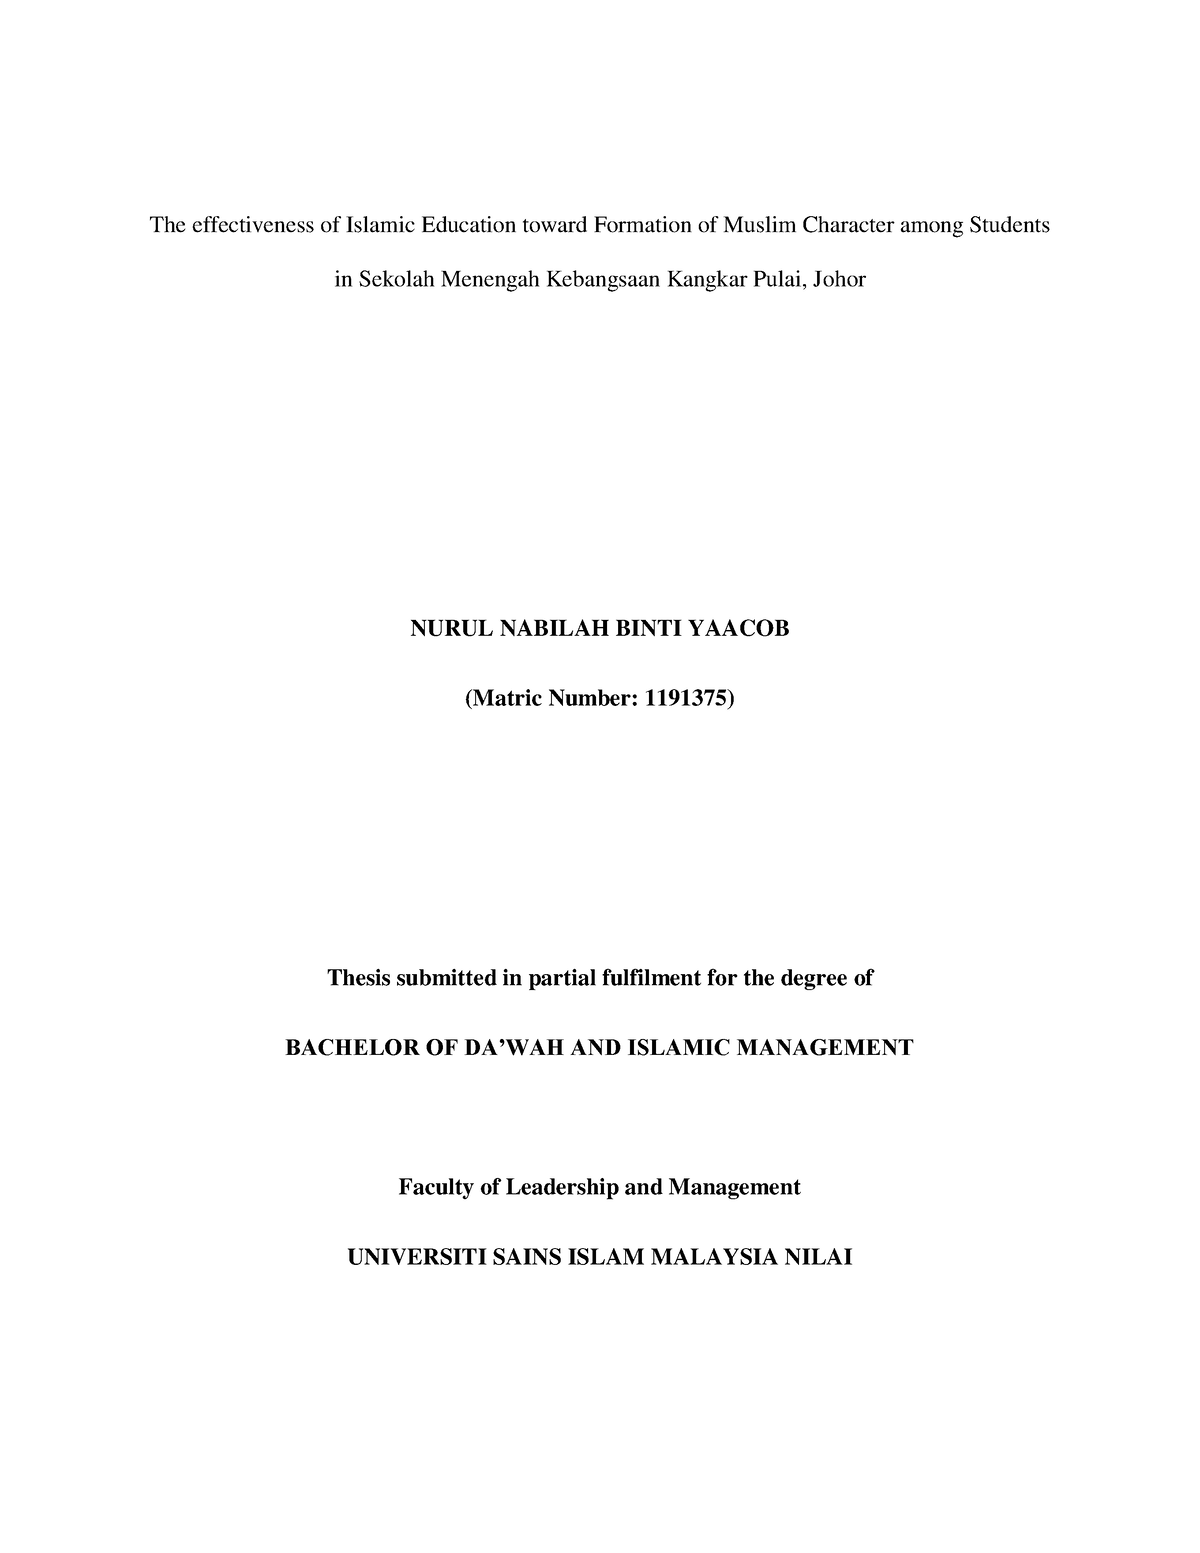 phd thesis islamic studies pdf